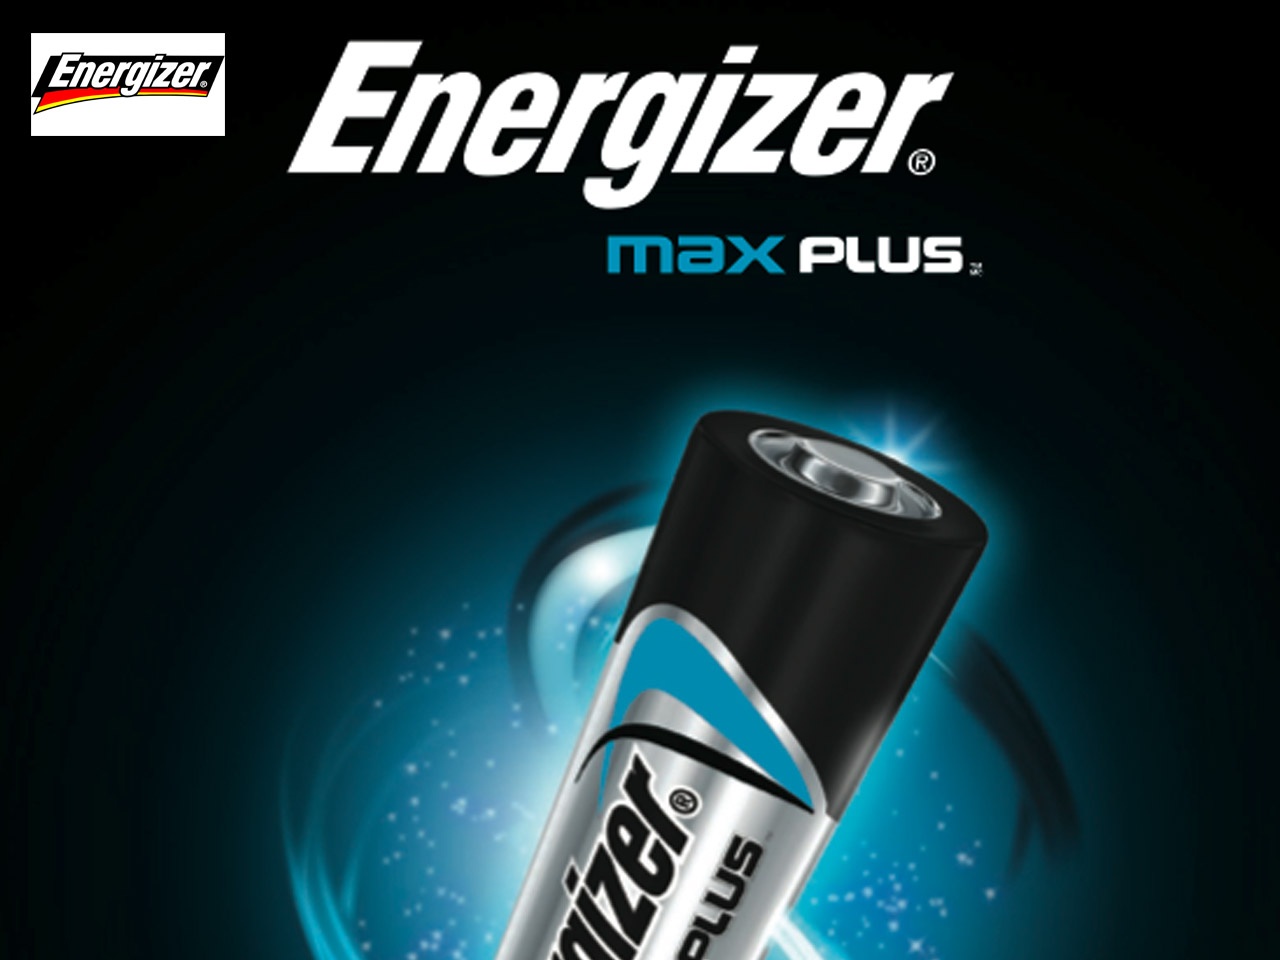 Energizer lance Max Plus, sa pile la plus puissante ! - Faire Savoir Faire